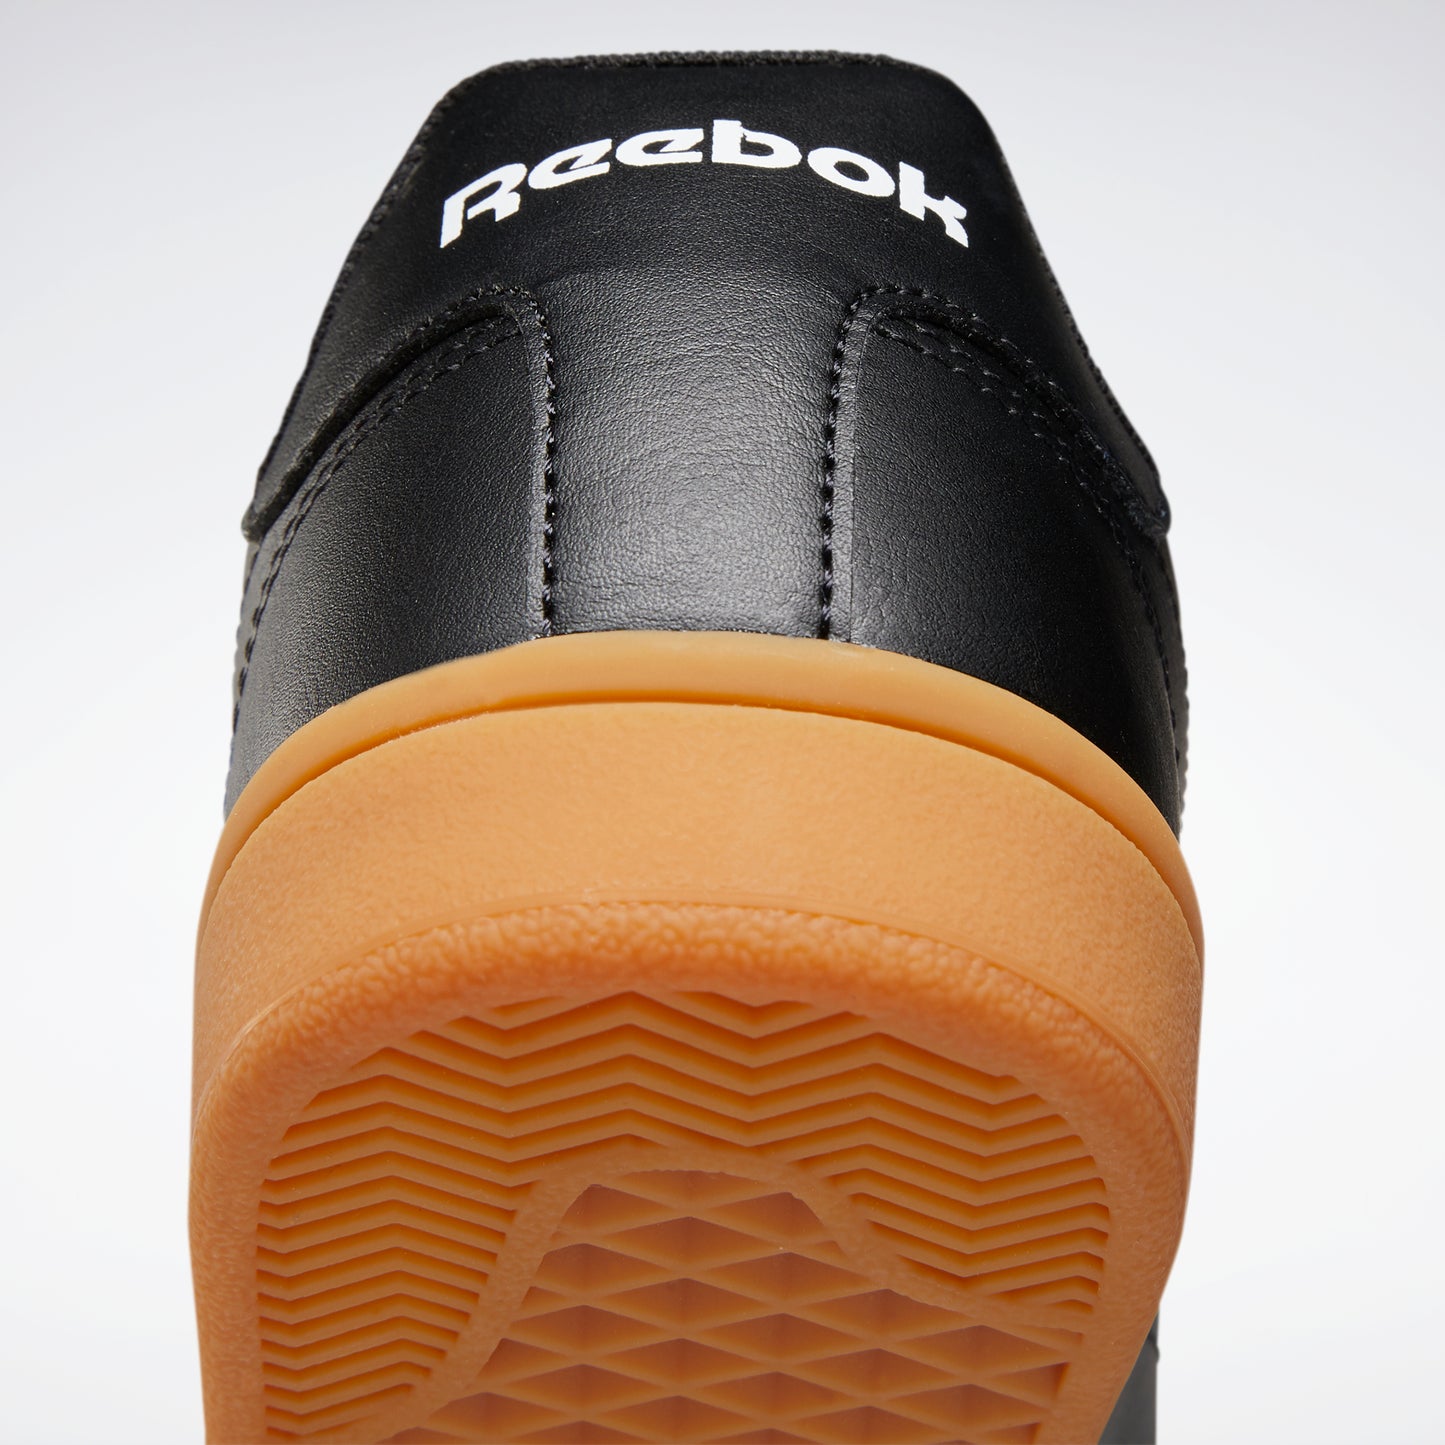 Reebok Footwear Men Reebok Royal Complete Clean 2.0 Shoes Black/White/Rbkg06